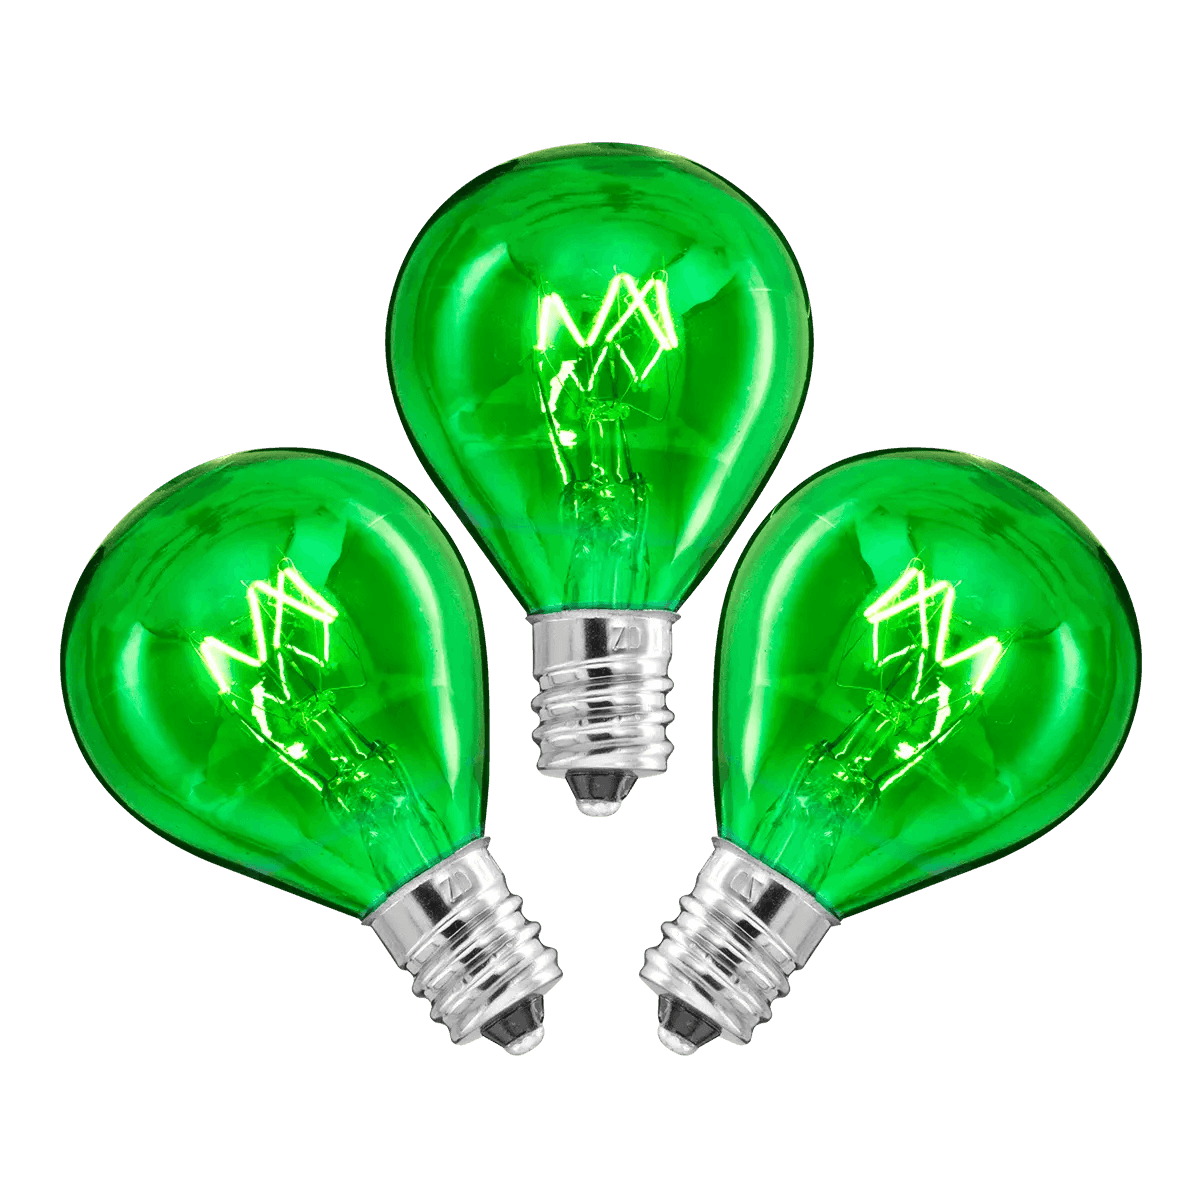 20 Watt Light Bulbs - 3 Pack – Green